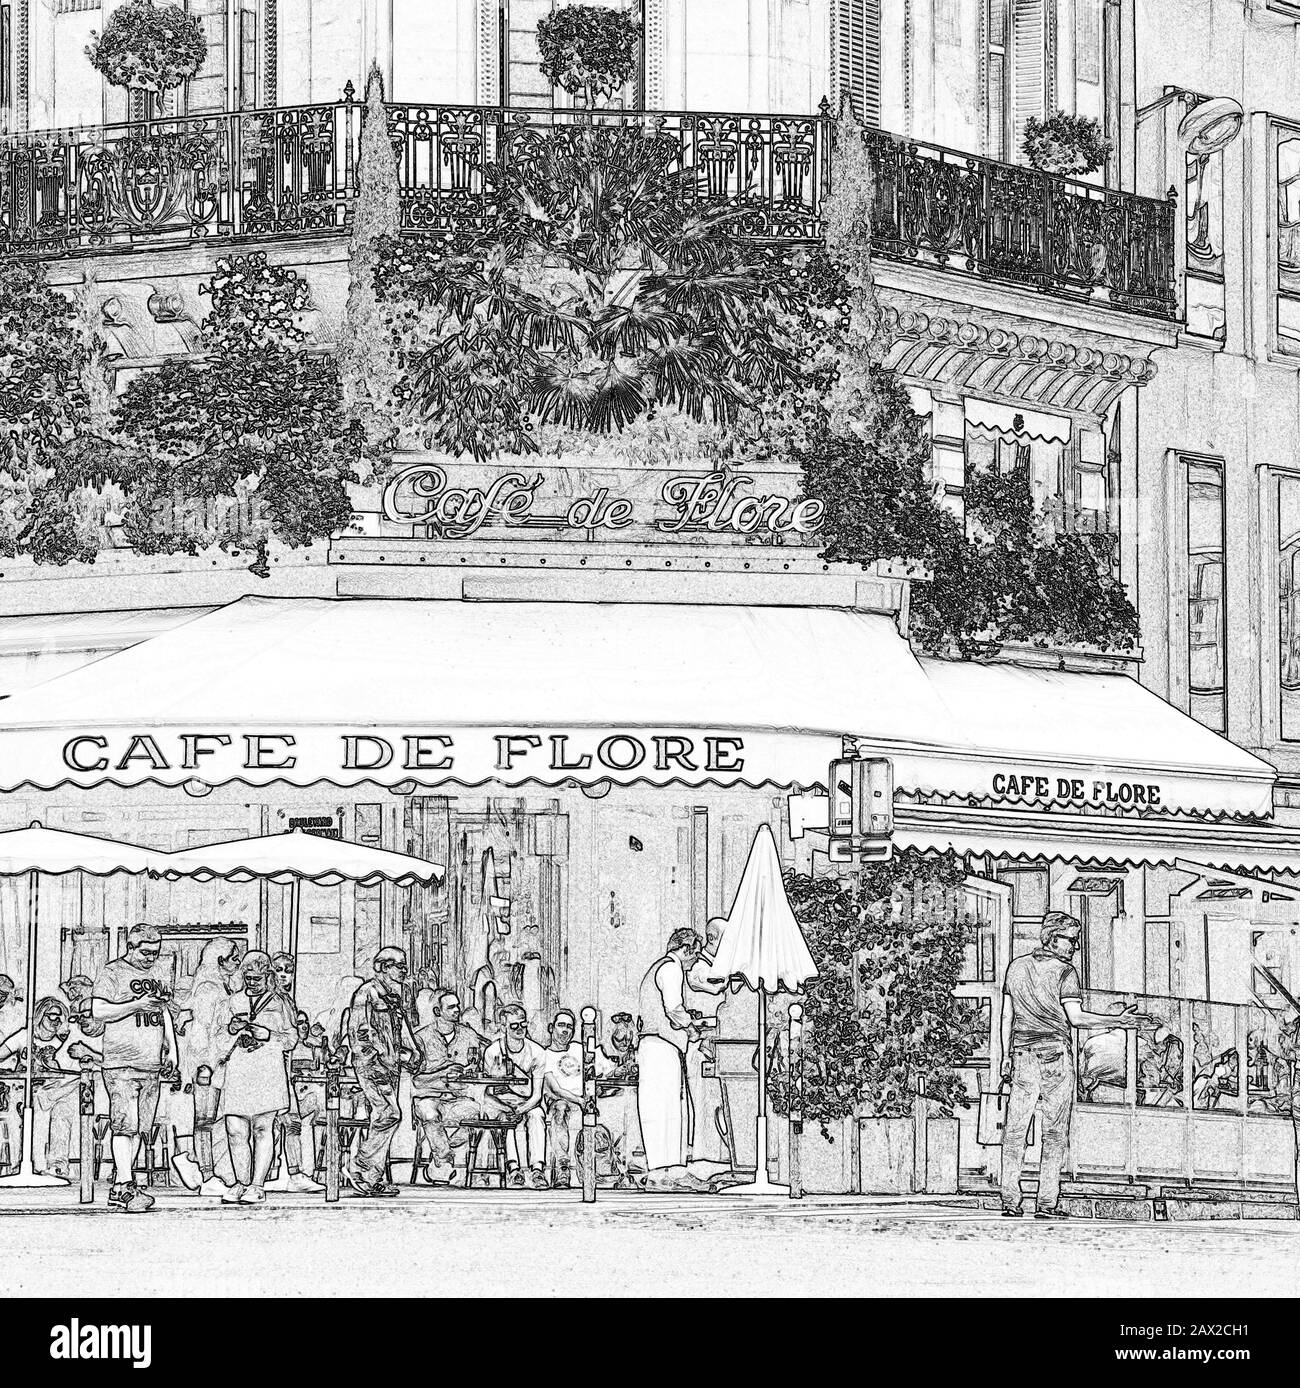 Café de Flore, Latin quarter, Paris, France Stock Photo